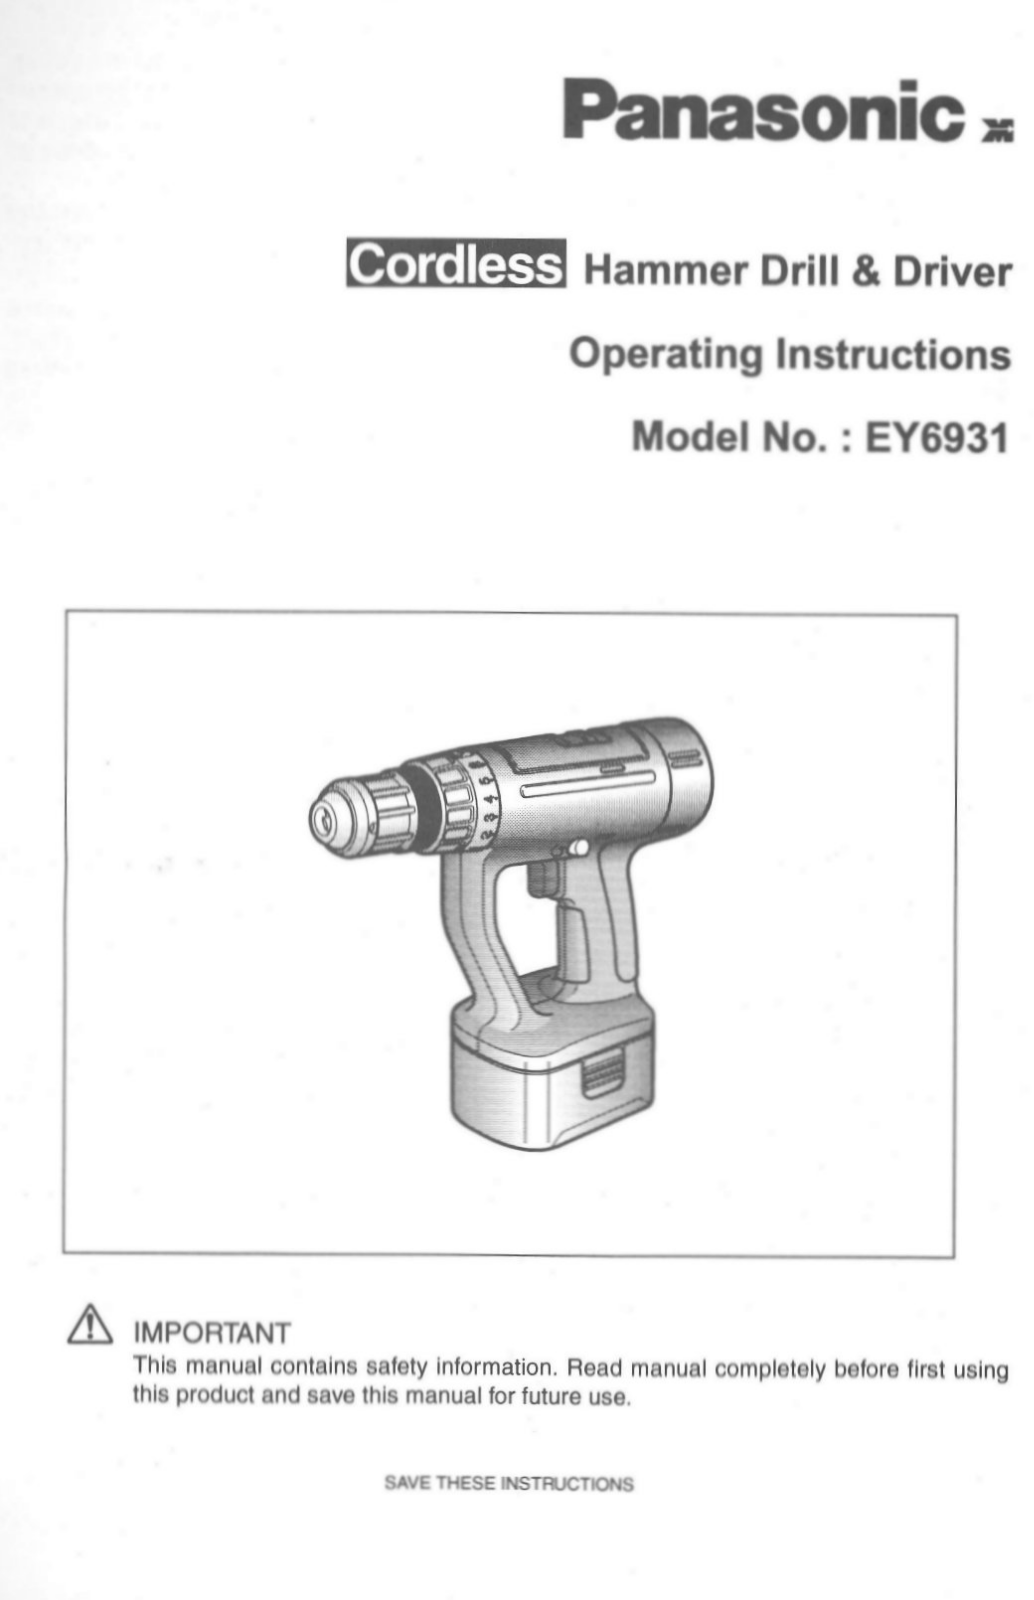 Panasonic ey6931 Operation Manual